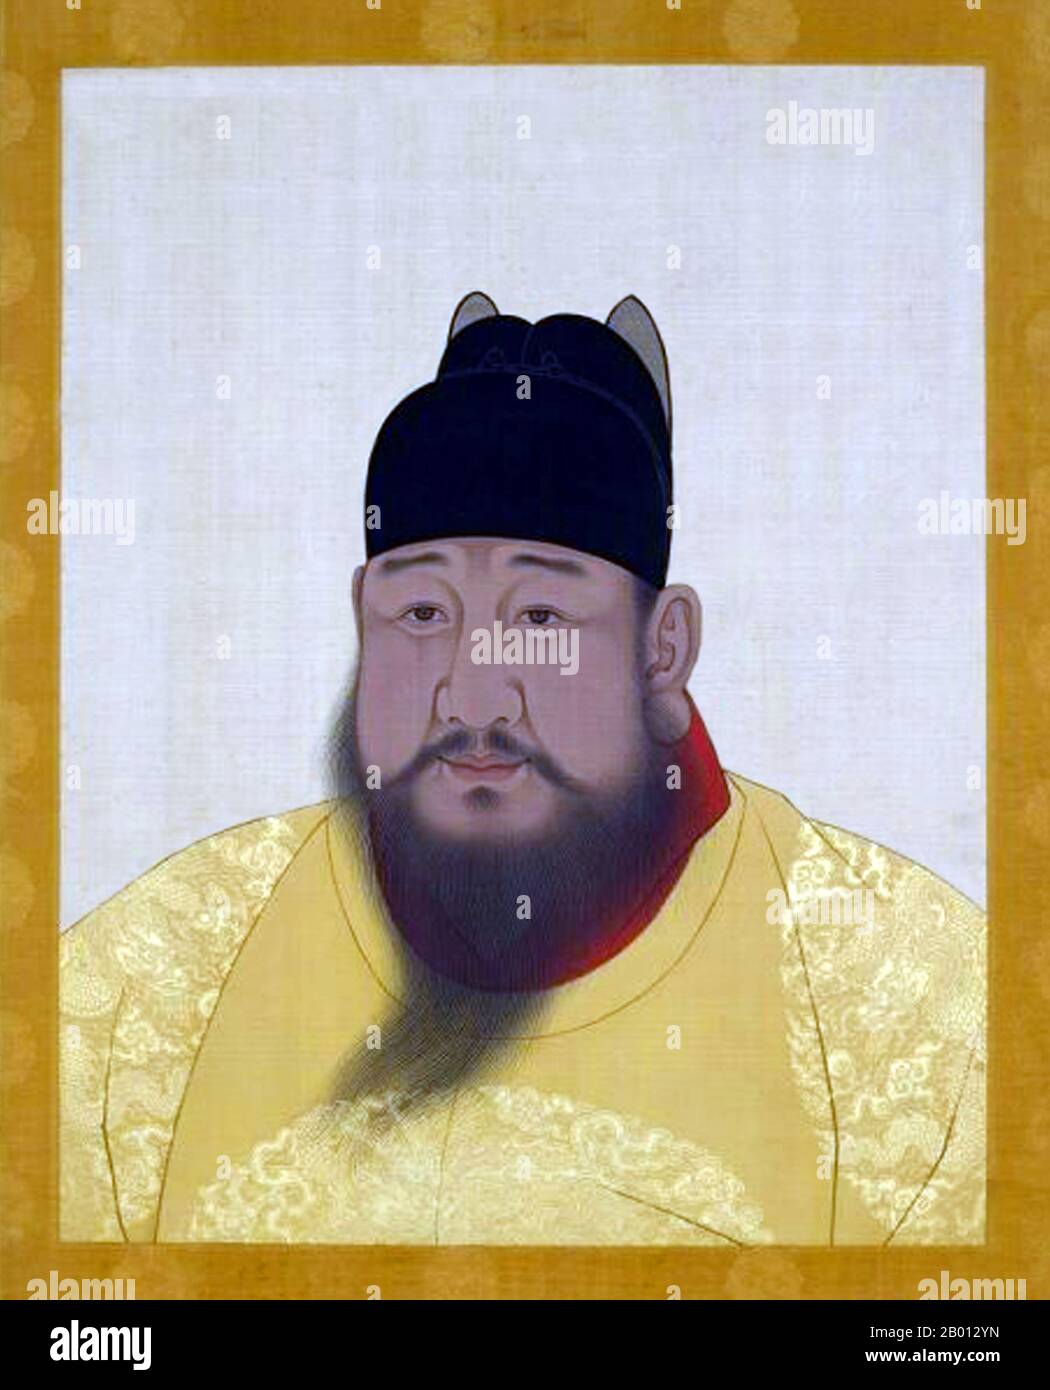 Cina: Imperatore Xuande, 5 ° sovrano della dinastia Ming (r. 1425-1435). Pittura a chiocciola sospesa, XV-XVII secolo. L'imperatore Xuande (1399-1435), nome personale Zhu Zhani e nome del tempio Xuanzong, fu il quinto imperatore di Ming Cina. Il suo nome d'epoca significa "proclamazione della virtù". L'Imperatore Xuande governò un periodo di notevole pace senza problemi esterni o interni significativi. Gli storici più tardi hanno considerato il suo regno come l'età d'oro della dinastia Ming. Foto Stock